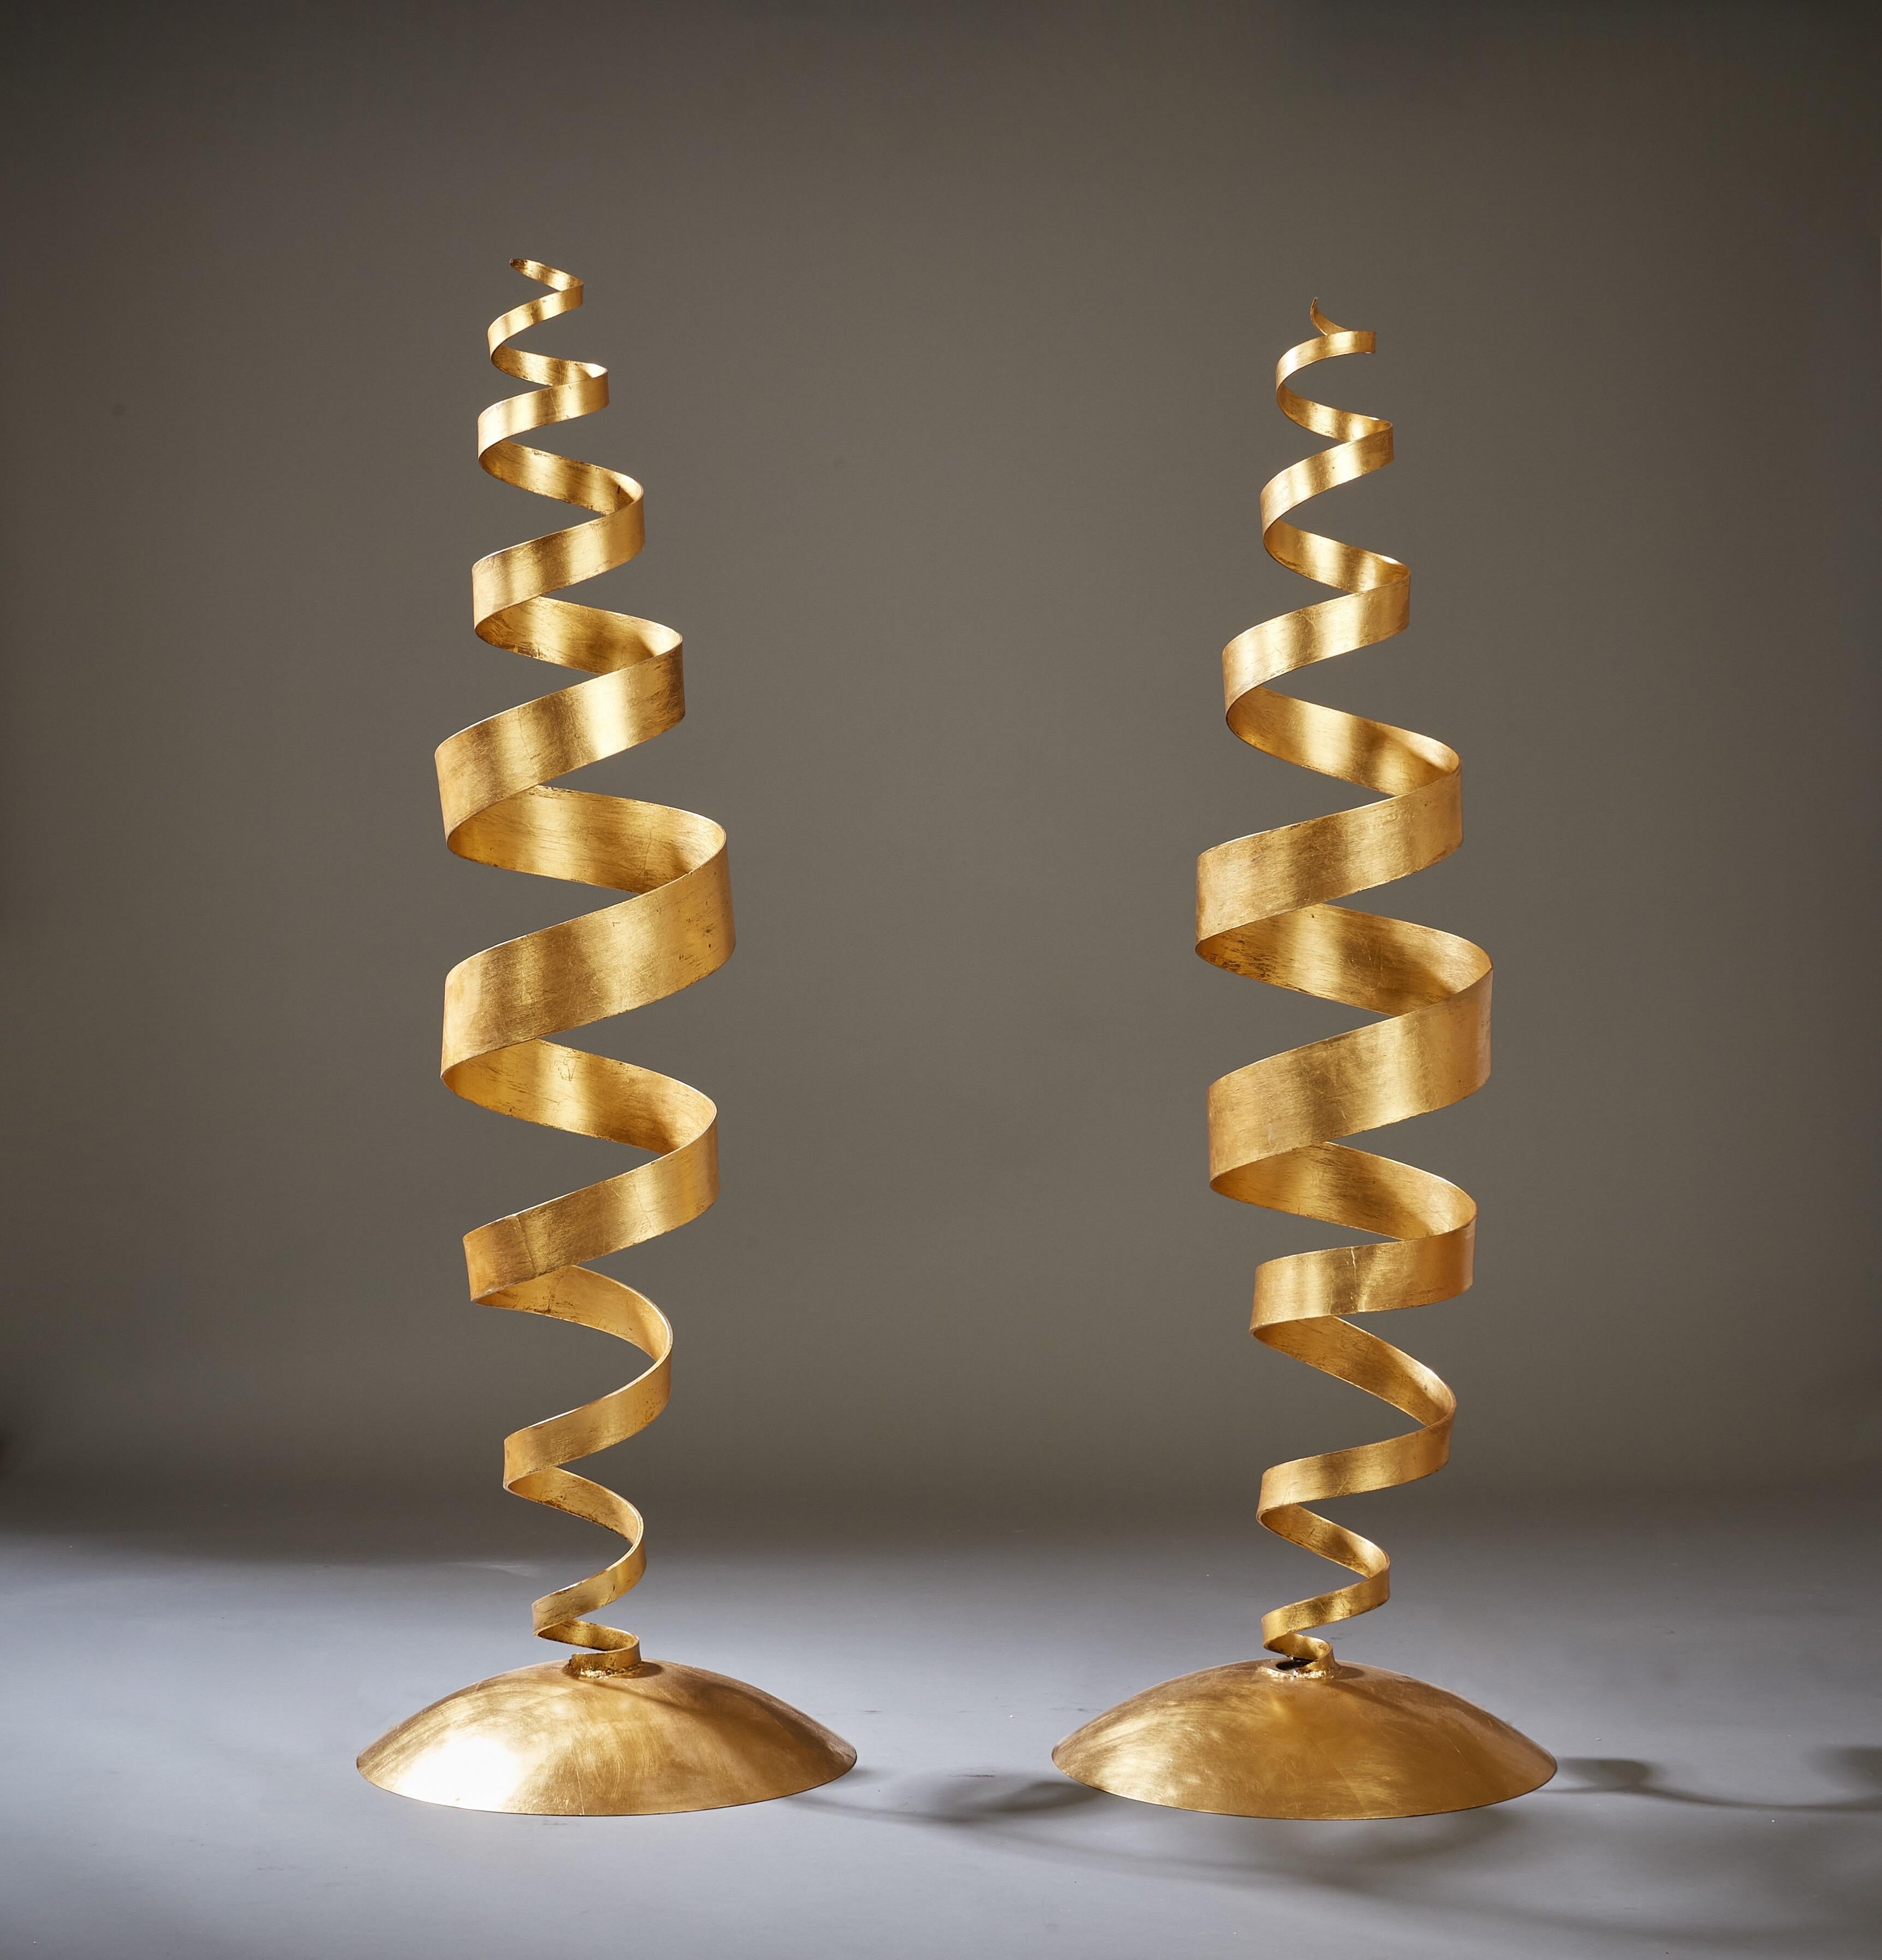 Tom Dixon (né en 1959)

Une paire de lampadaires en spirale du designer Tom Dixon OBE, en acier filé recouvert de feuilles d'or appliquées à la main. Des serpentins ondulants émergeant de bases dorées en forme de dôme qui abritent chacune une